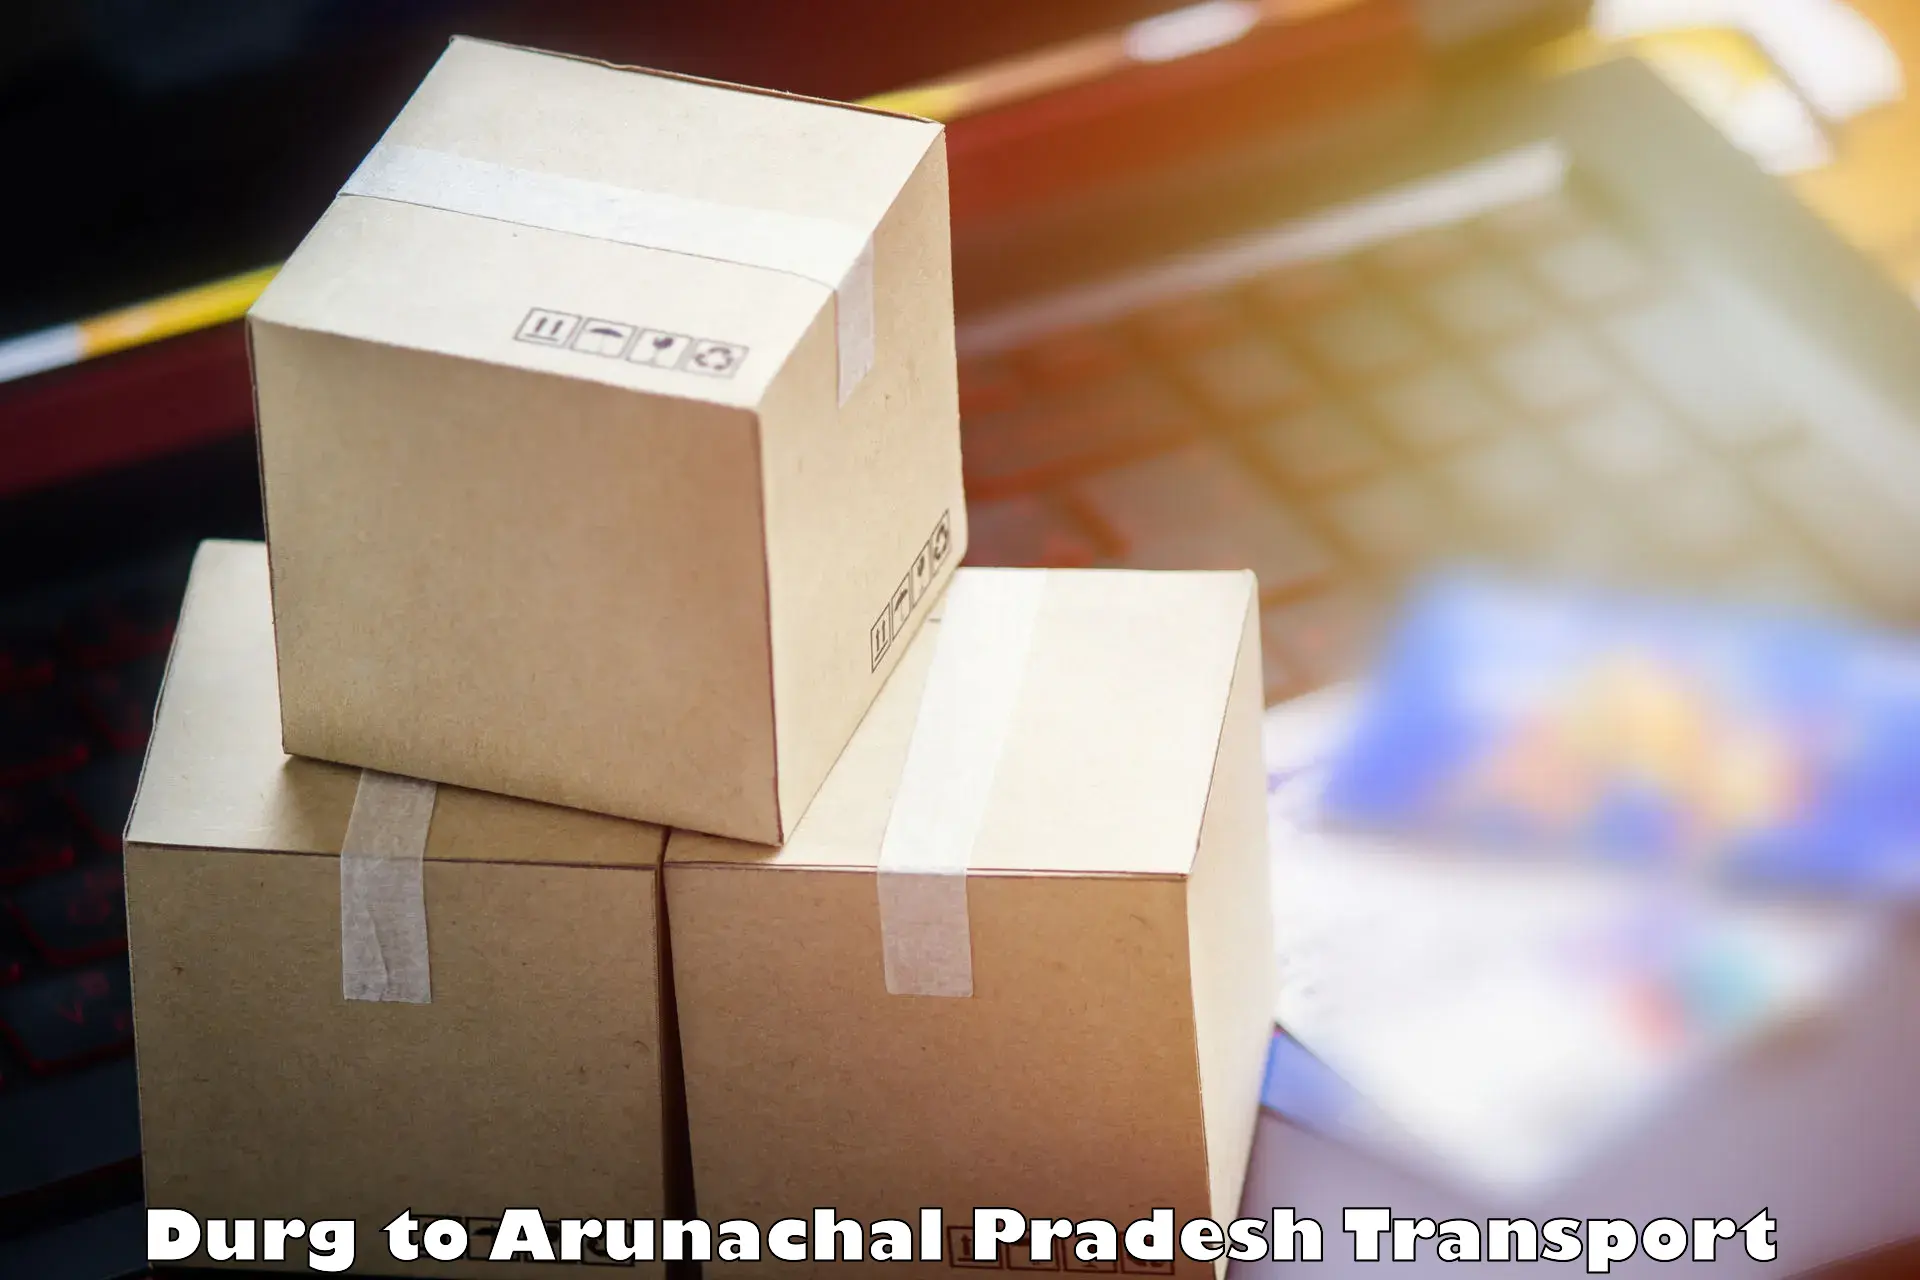 Road transport online services Durg to Arunachal Pradesh